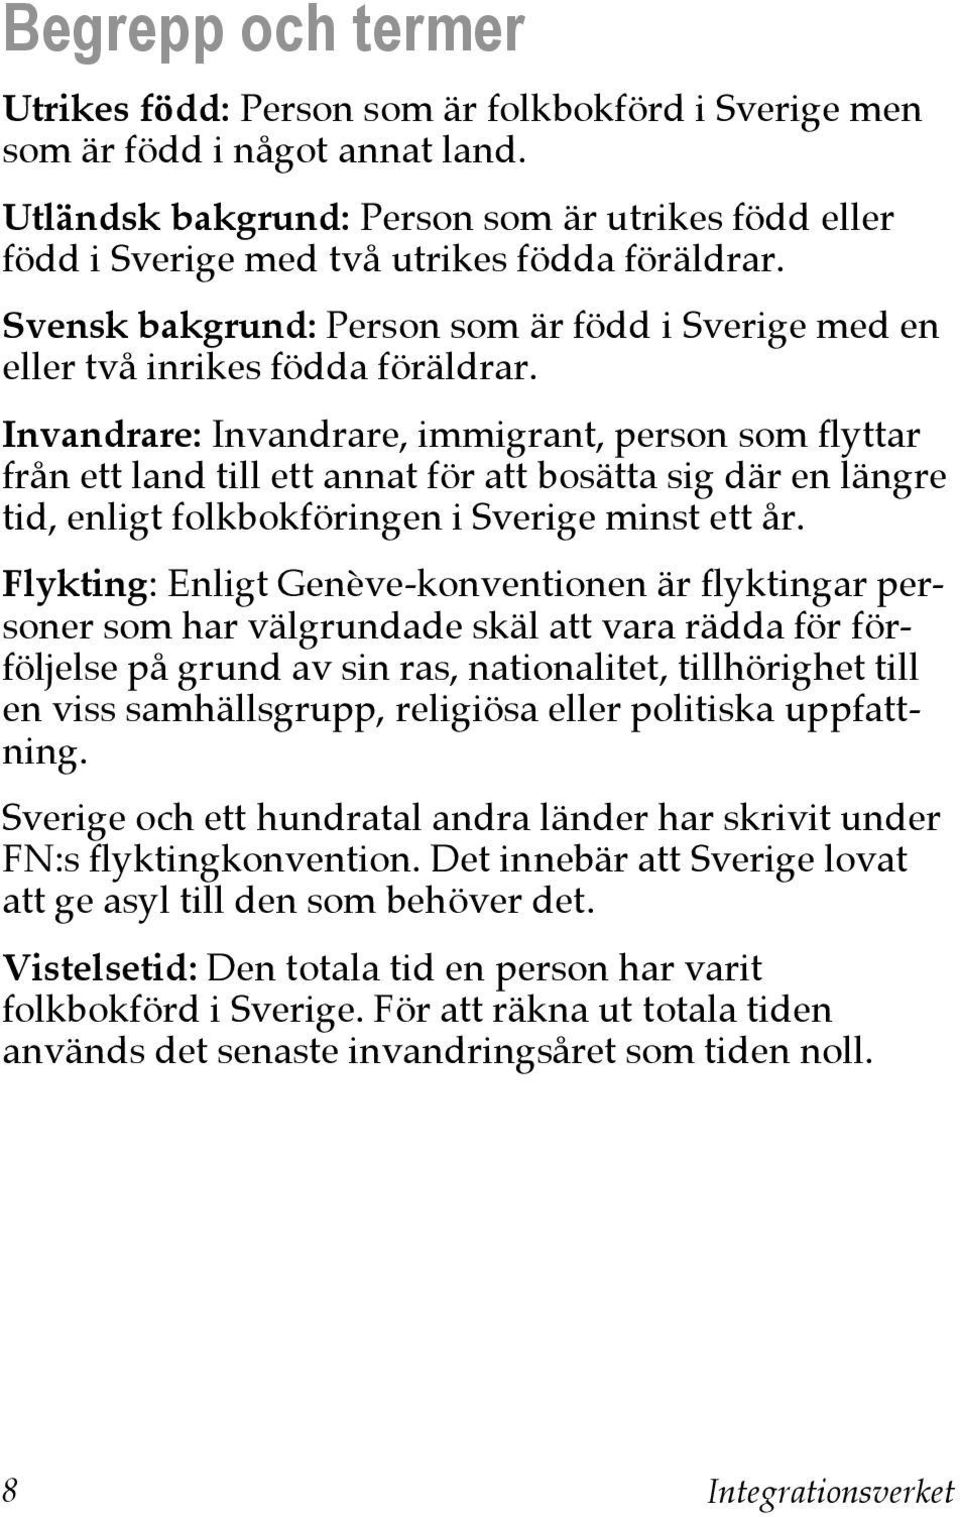 Invandrare: Invandrare, immigrant, person som flyttar från ett land till ett annat för att bosätta sig där en längre tid, enligt folkbokföringen i Sverige minst ett år.